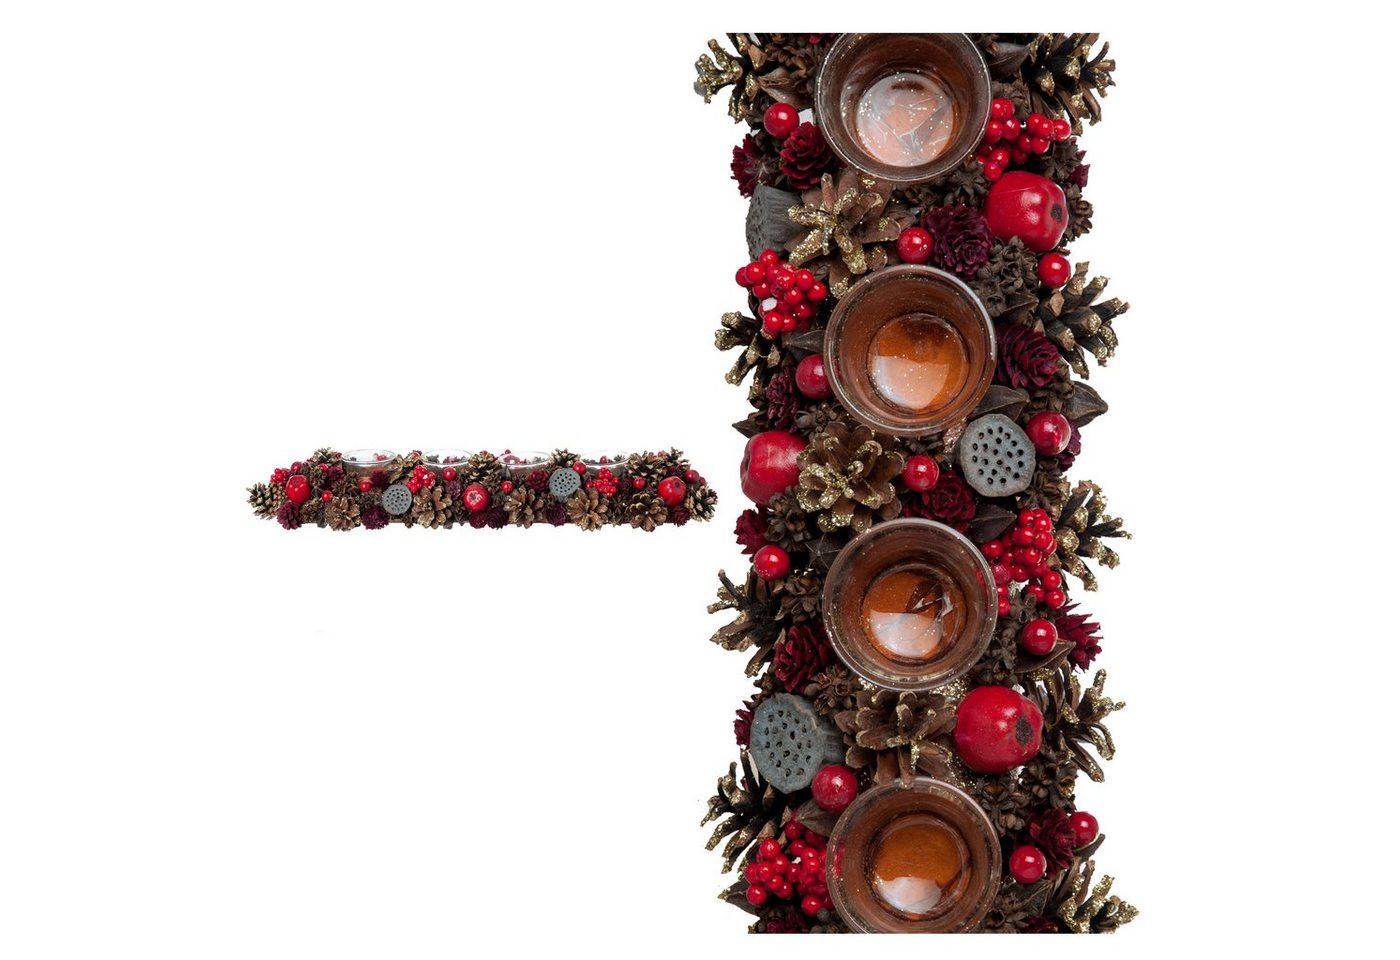 Small-Preis Adventsleuchter Adventsgesteck mit 4 Teelichthaltern in Weihnachtlicher Dekoration von Small-Preis